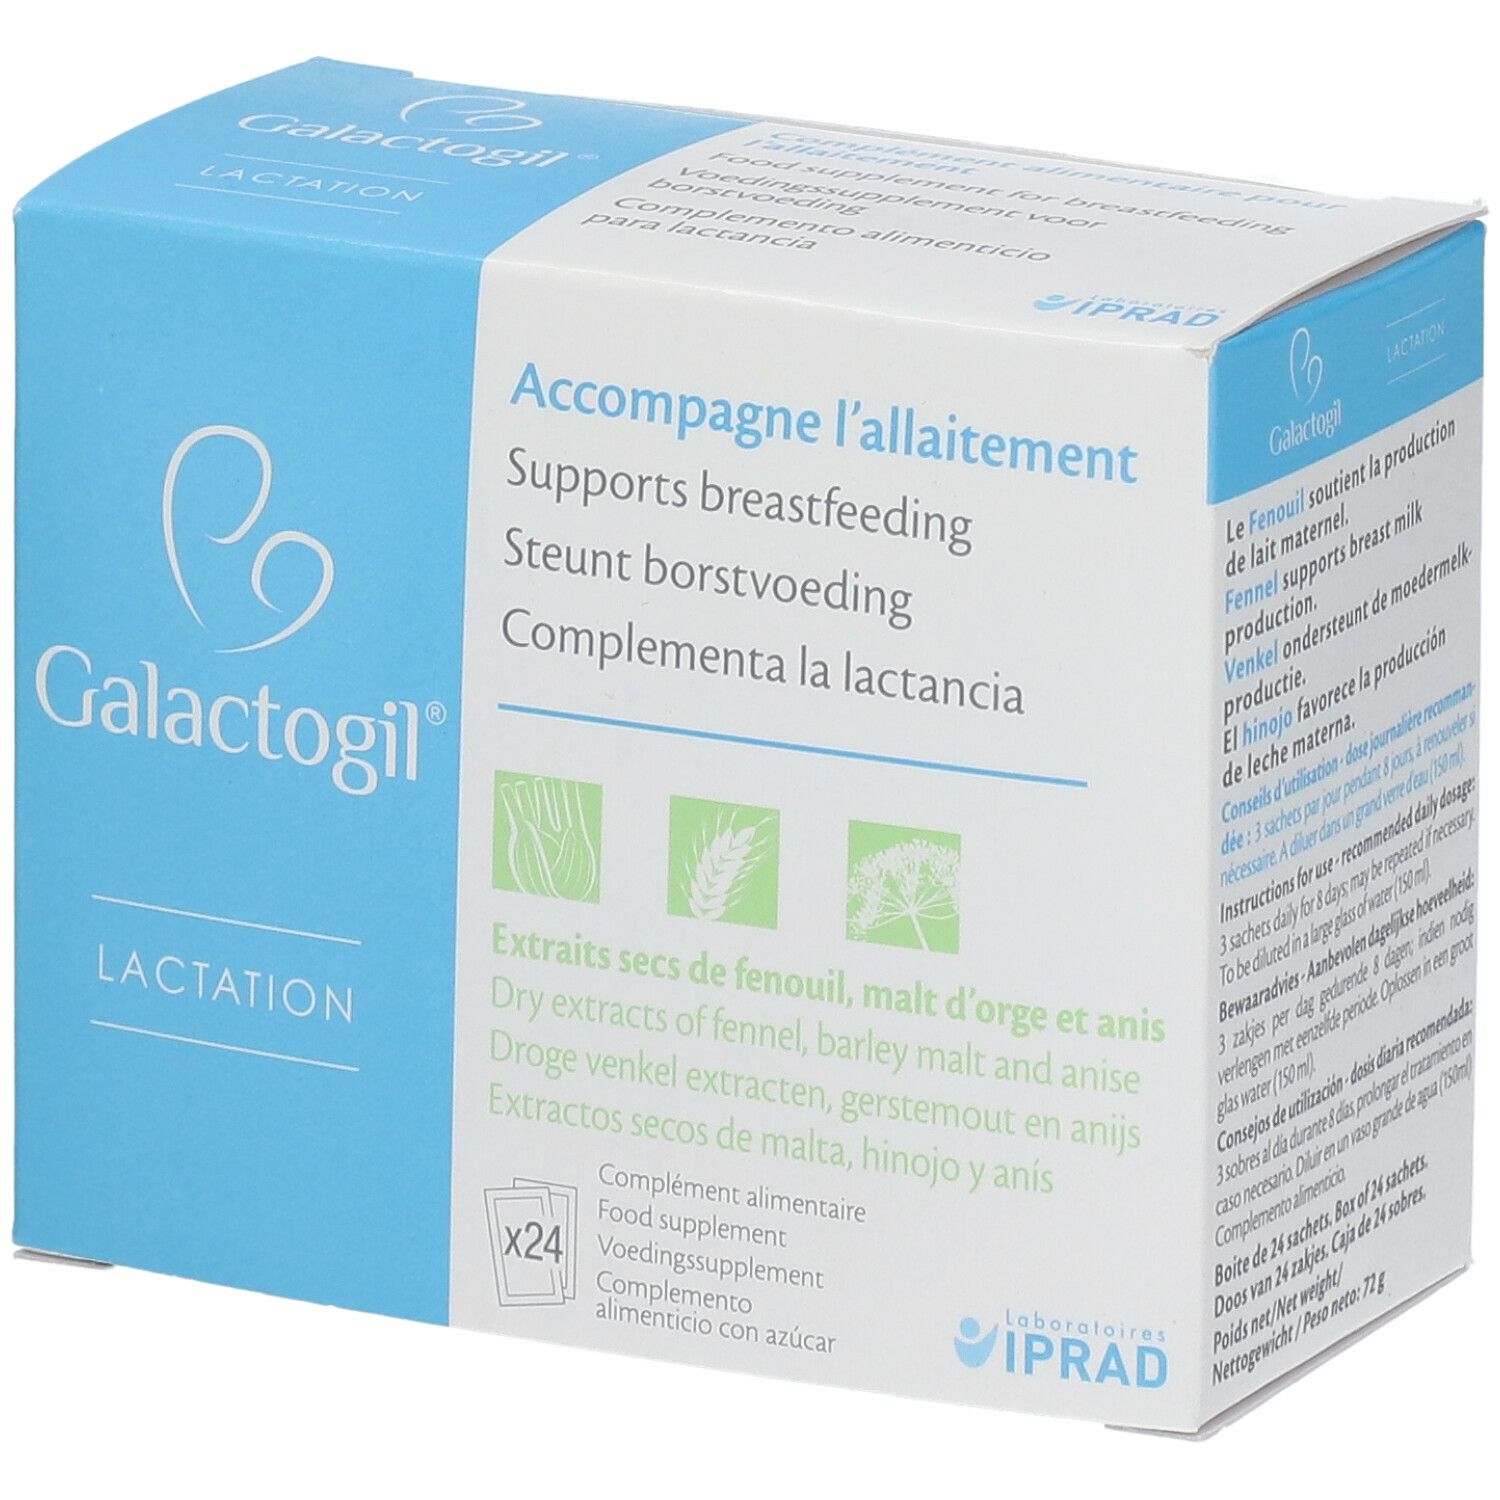 Iprad Galactogil® Lactation